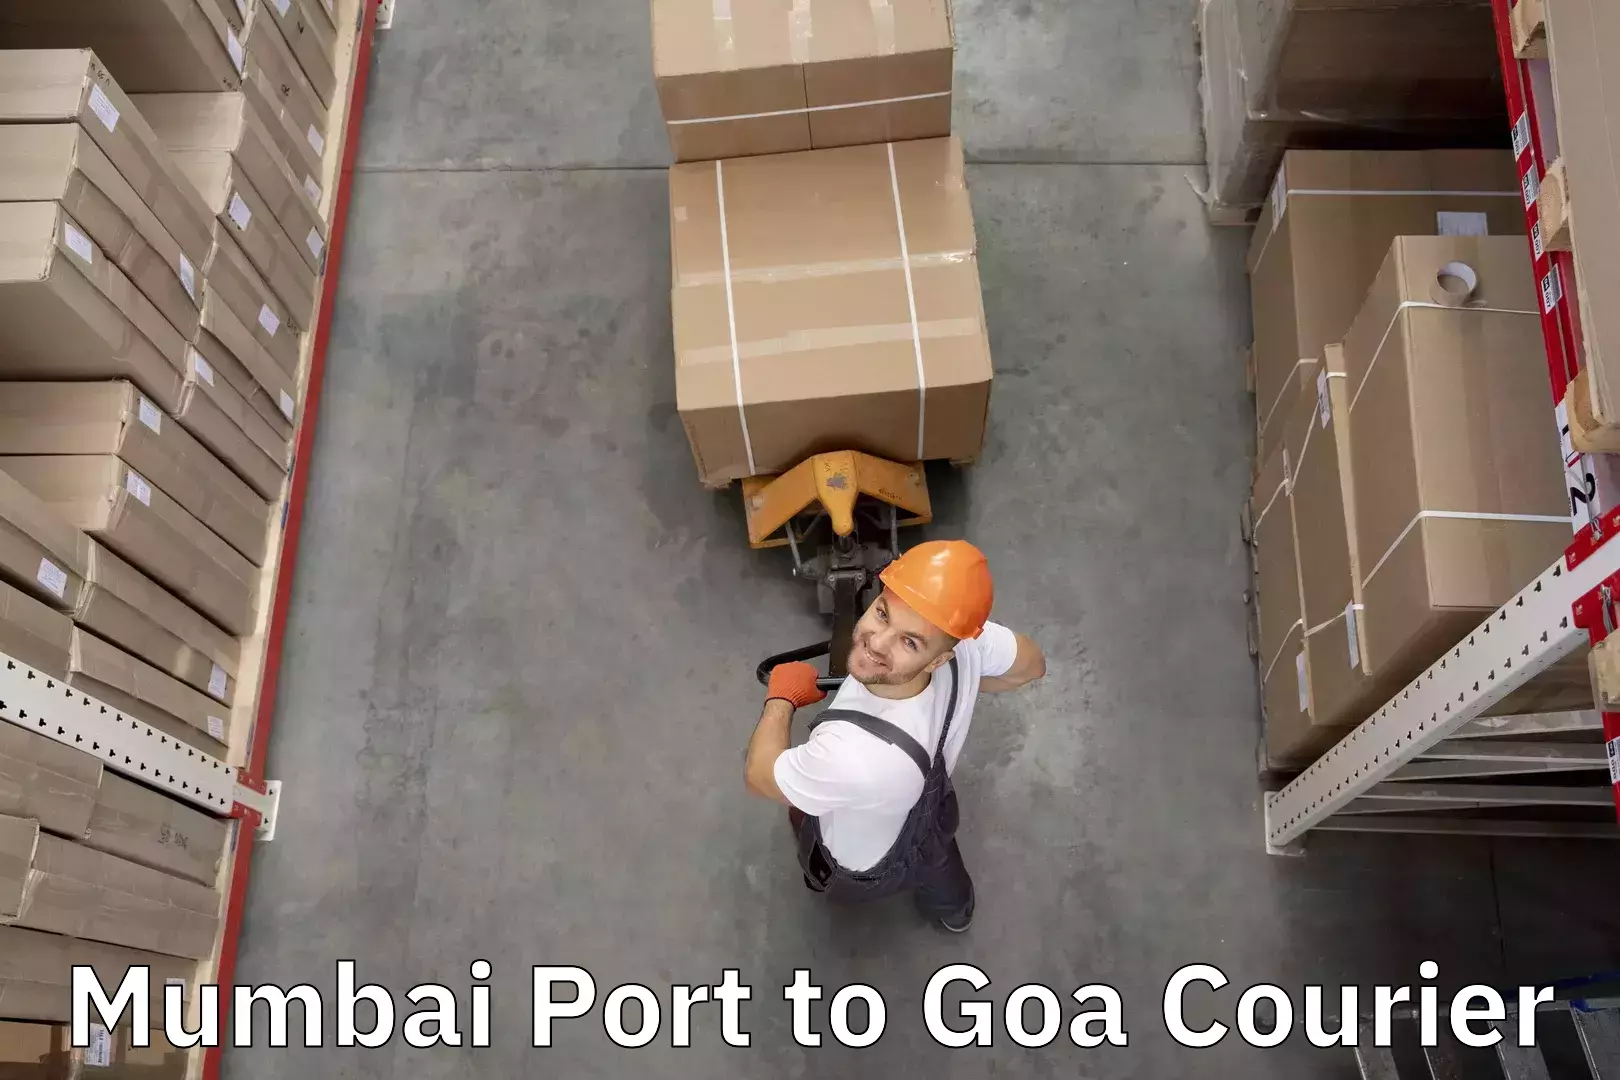 Baggage transport scheduler Mumbai Port to IIT Goa